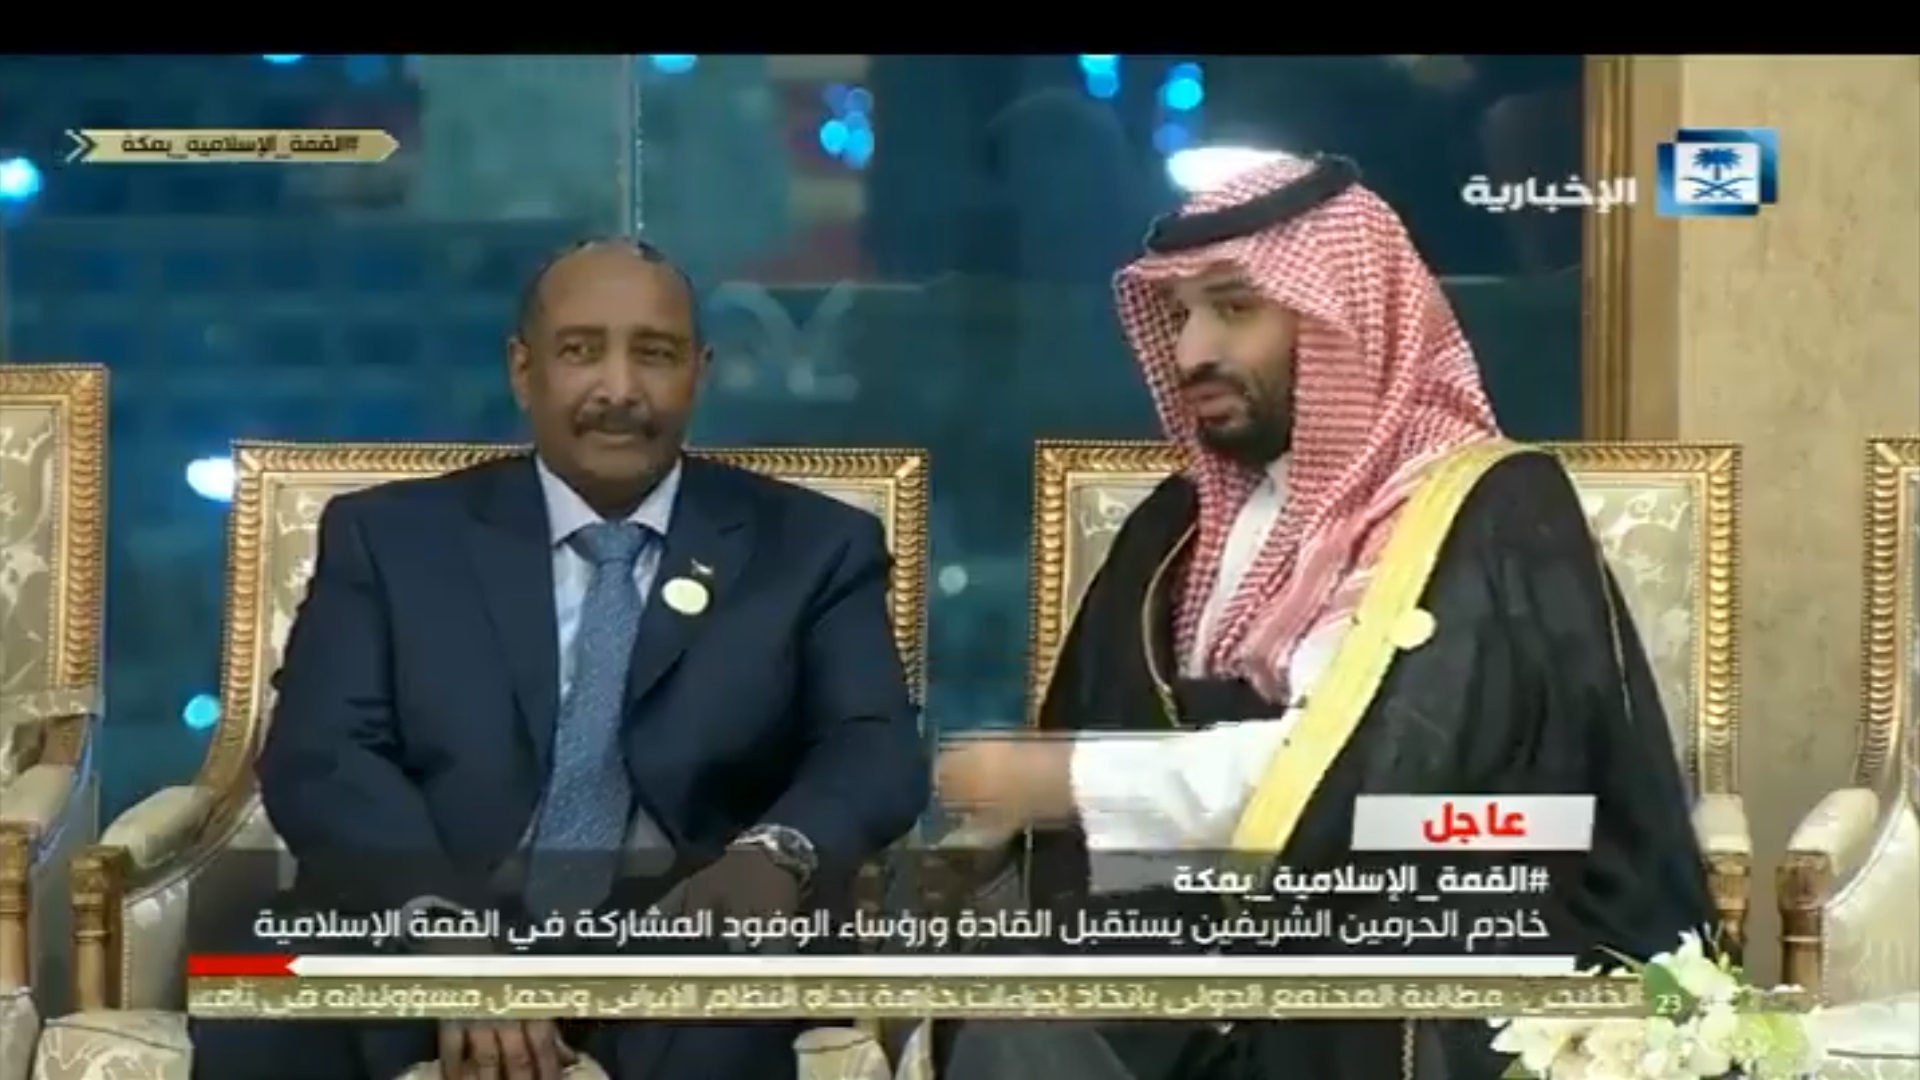 فيديو.. حديث بين الأمير محمد بن سلمان ورئيس الانتقالي السوداني في قصر الصفا